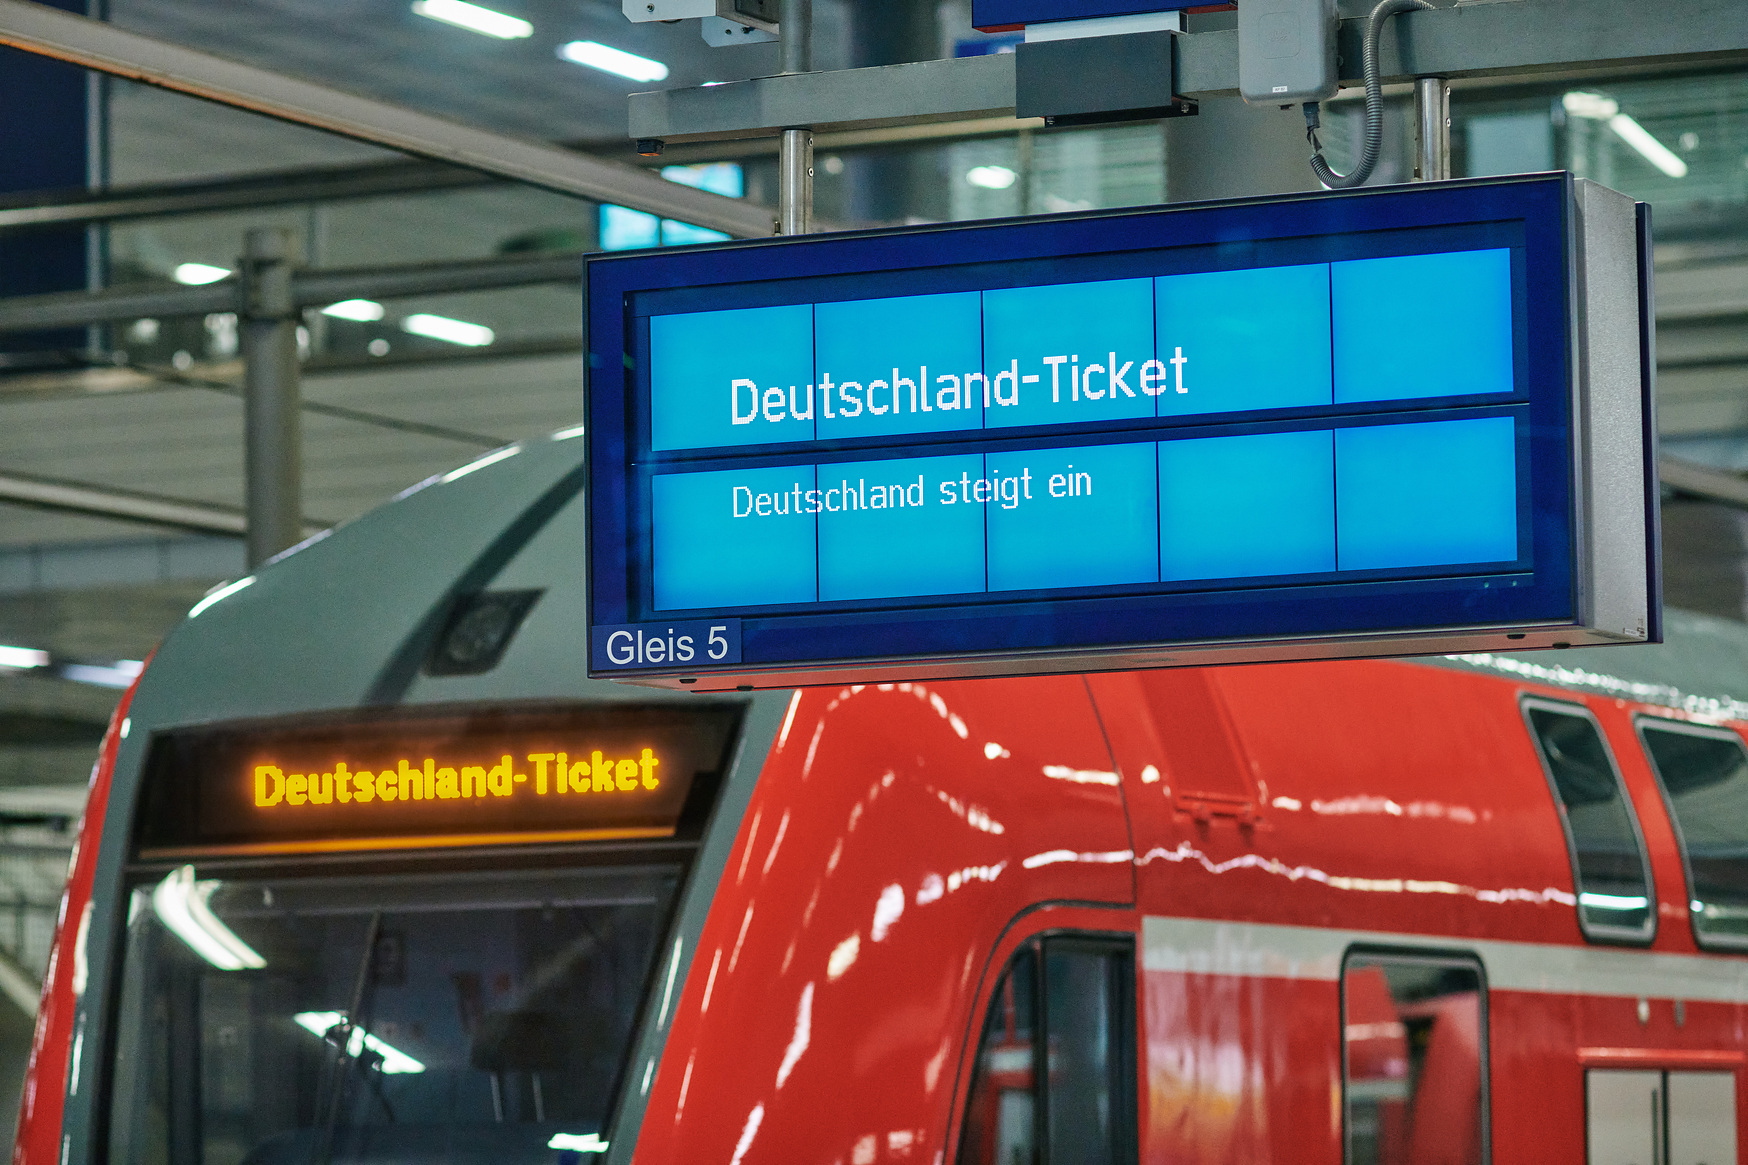 Auf dem Bild ist ein Regionalzug zu sehen mit einer Anzeigetafel auf der als Ziel "Deutschlandticket" steht